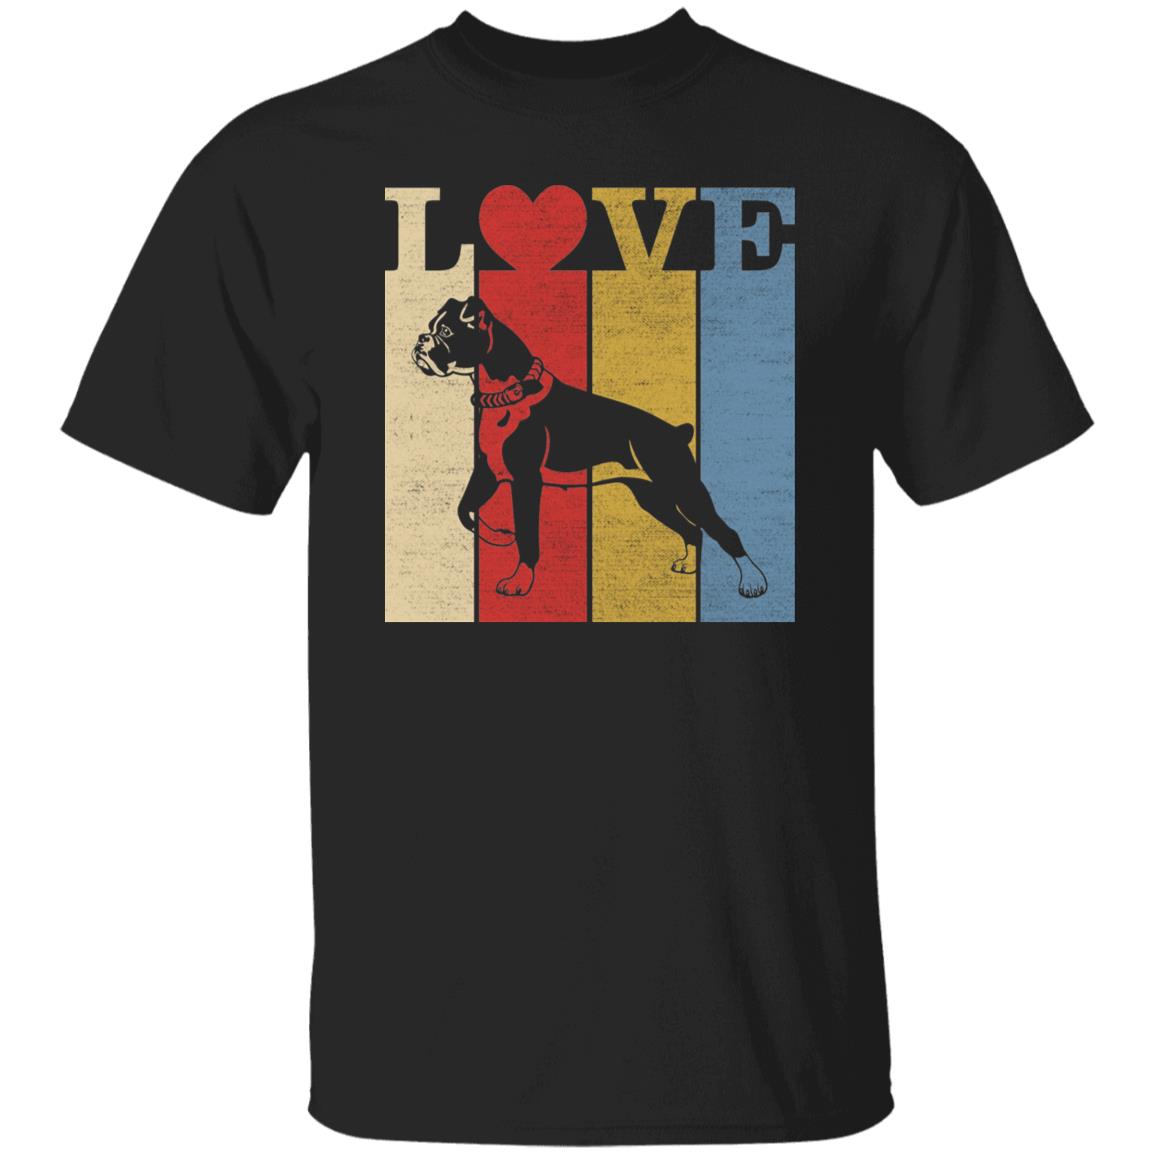 Retro Love Dogs T-Shirt gift Pitbull Dog owner Unisex tee Black Navy Dark Heather-Black-Family-Gift-Planet